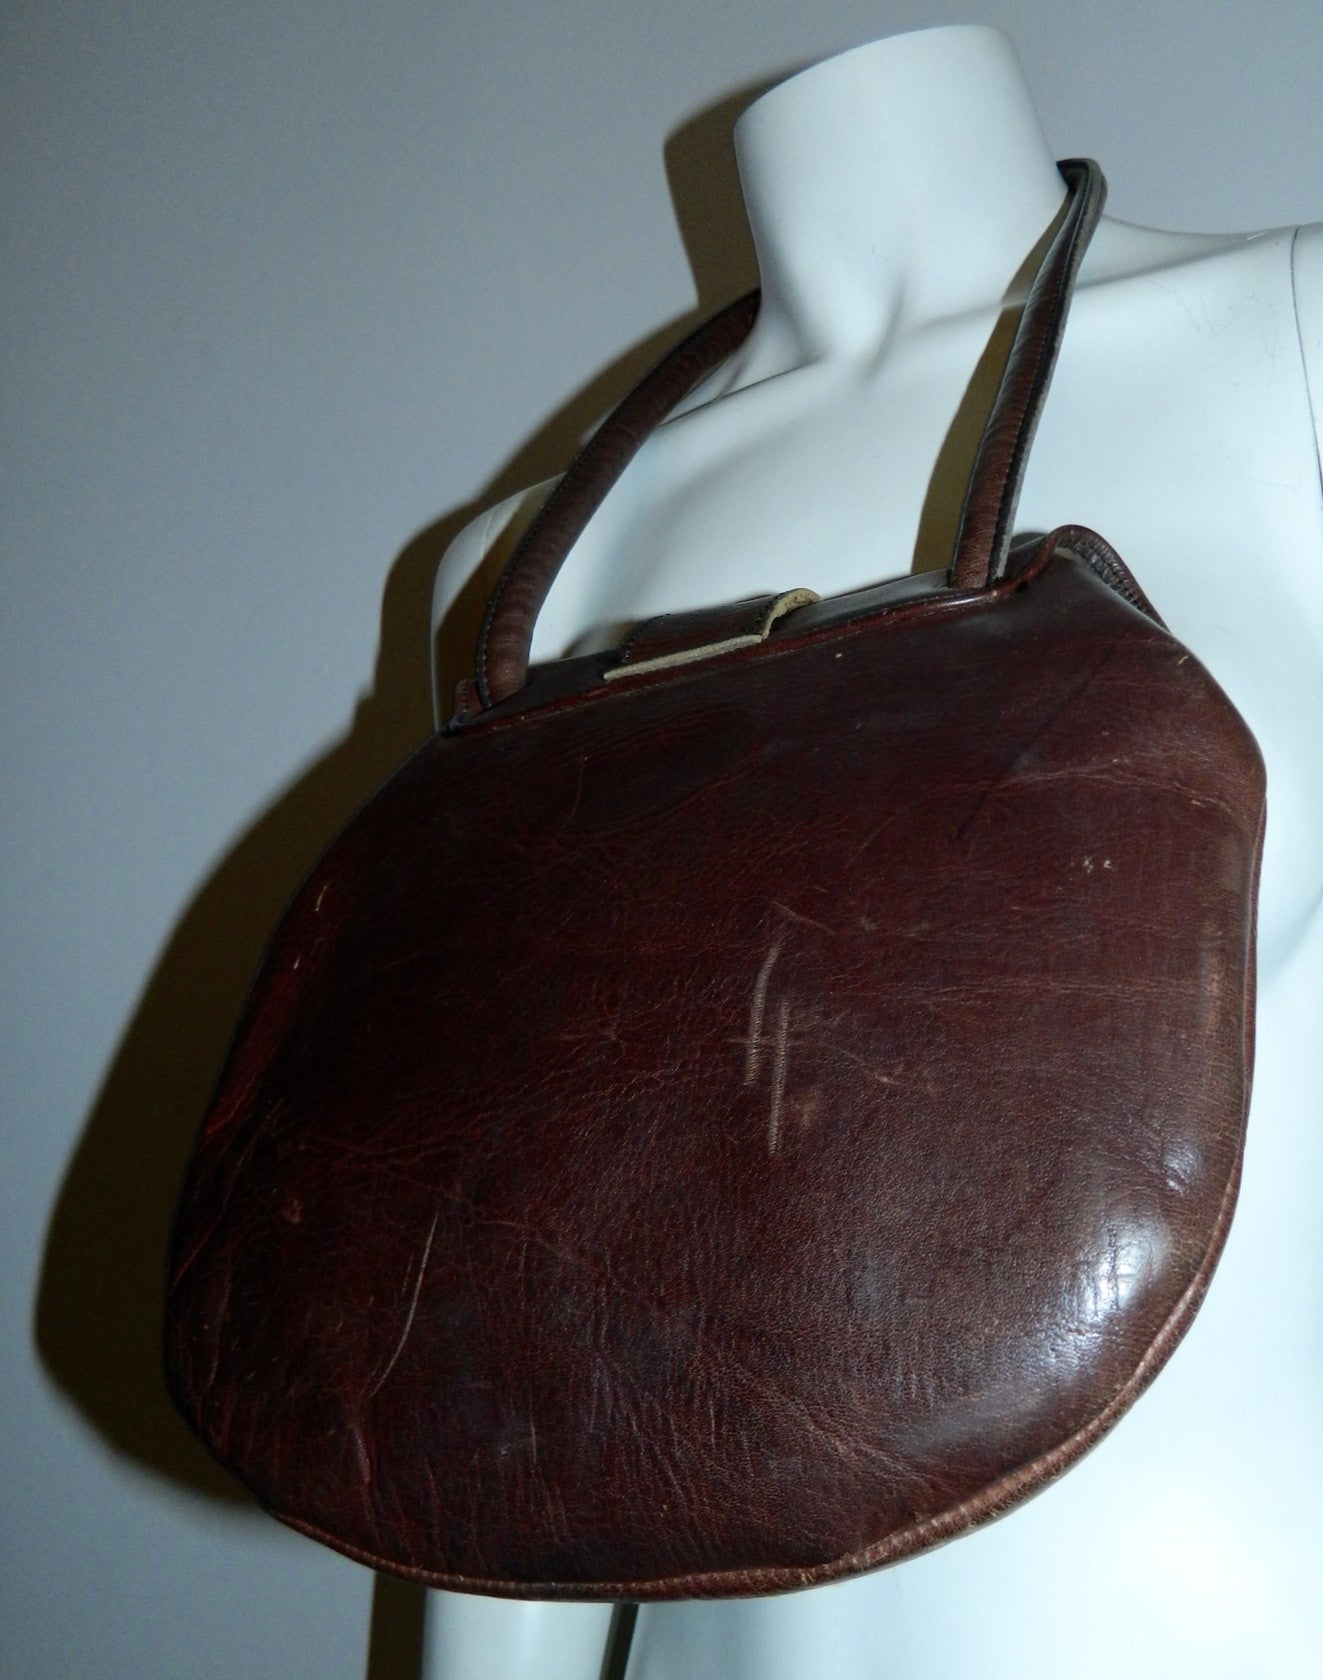 vintage 1970s purse brown leather Bort Carleton shoulder bag brass buckle